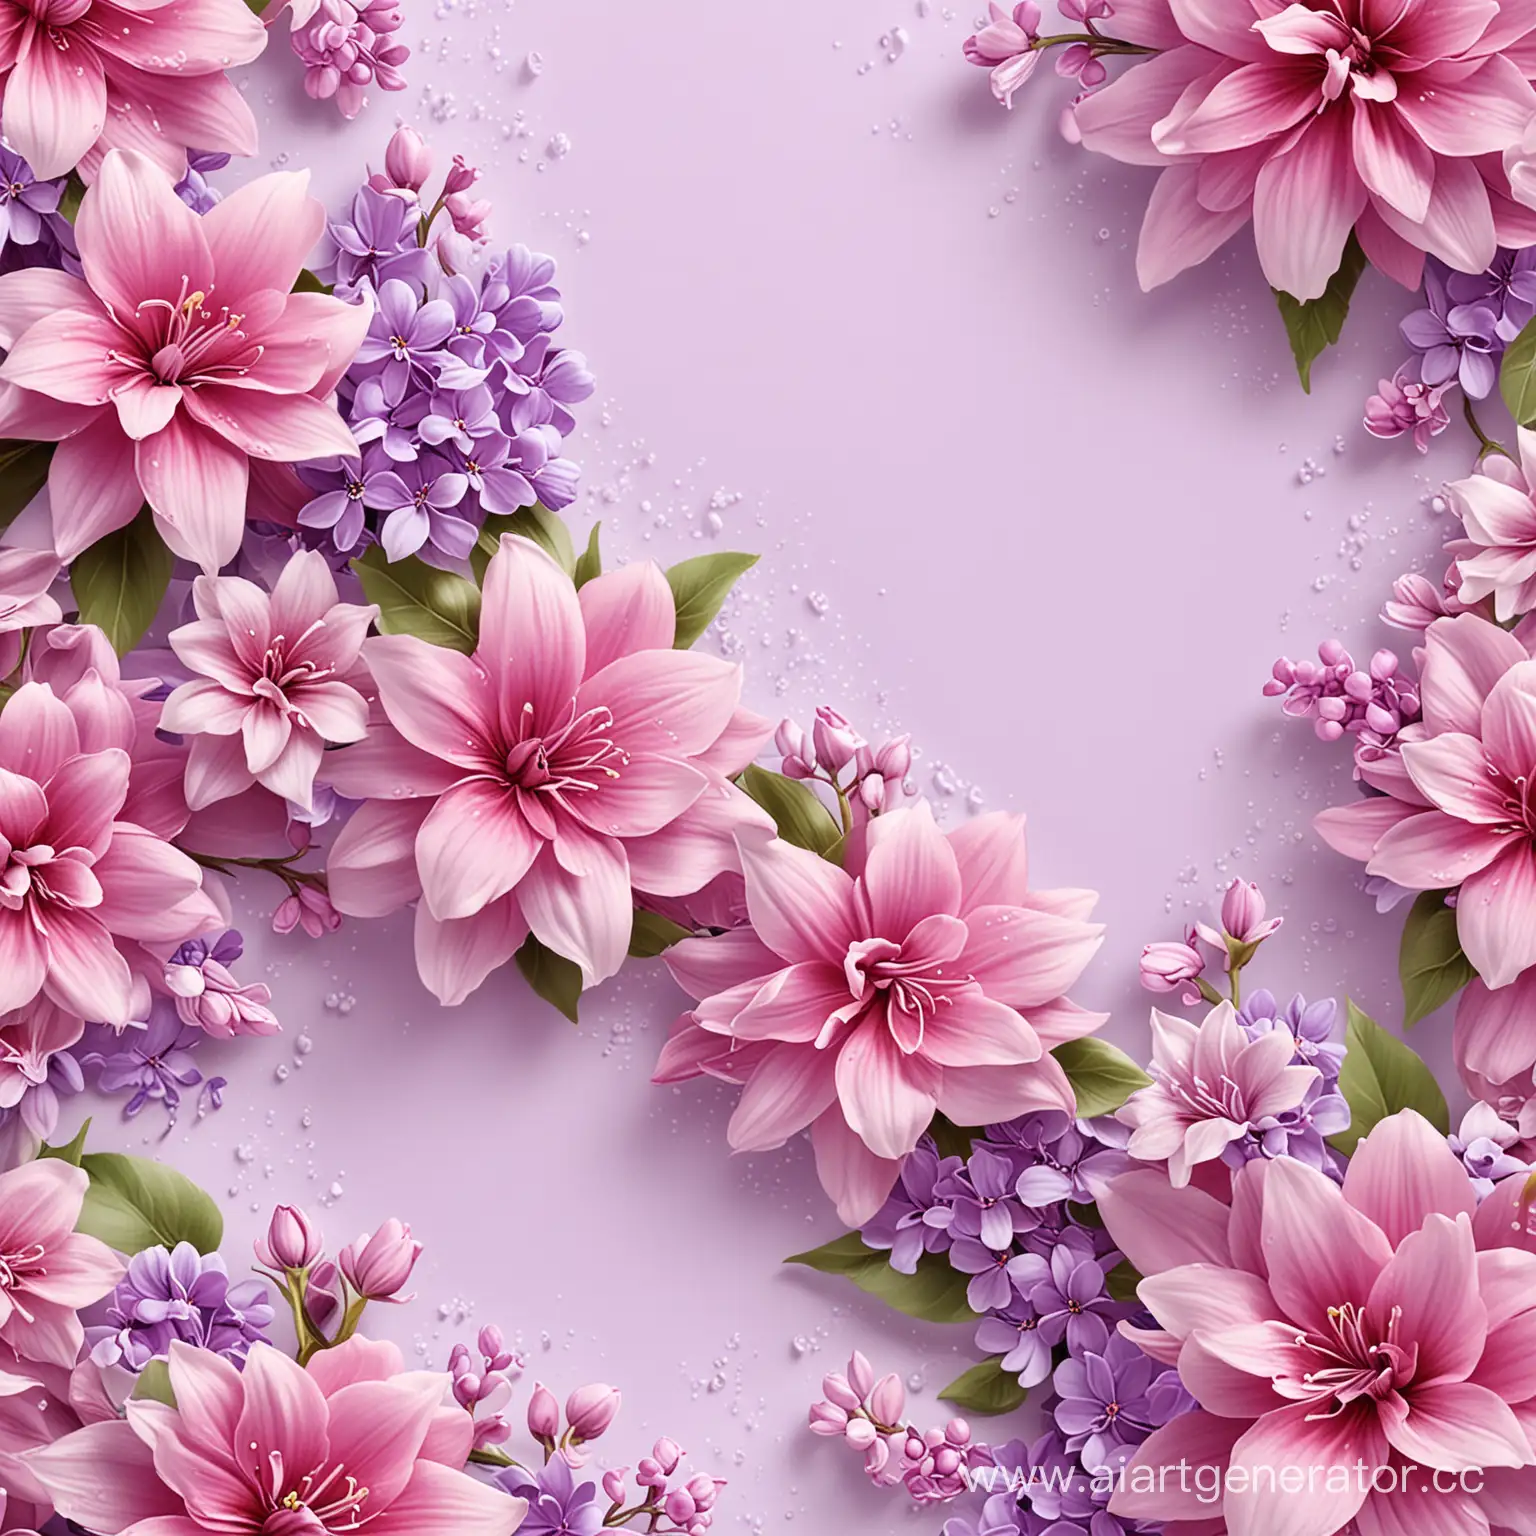 размер 3200 на 410 пикселей, дизайн, яркие цветы, яркий фон, розово-сиреневые тона